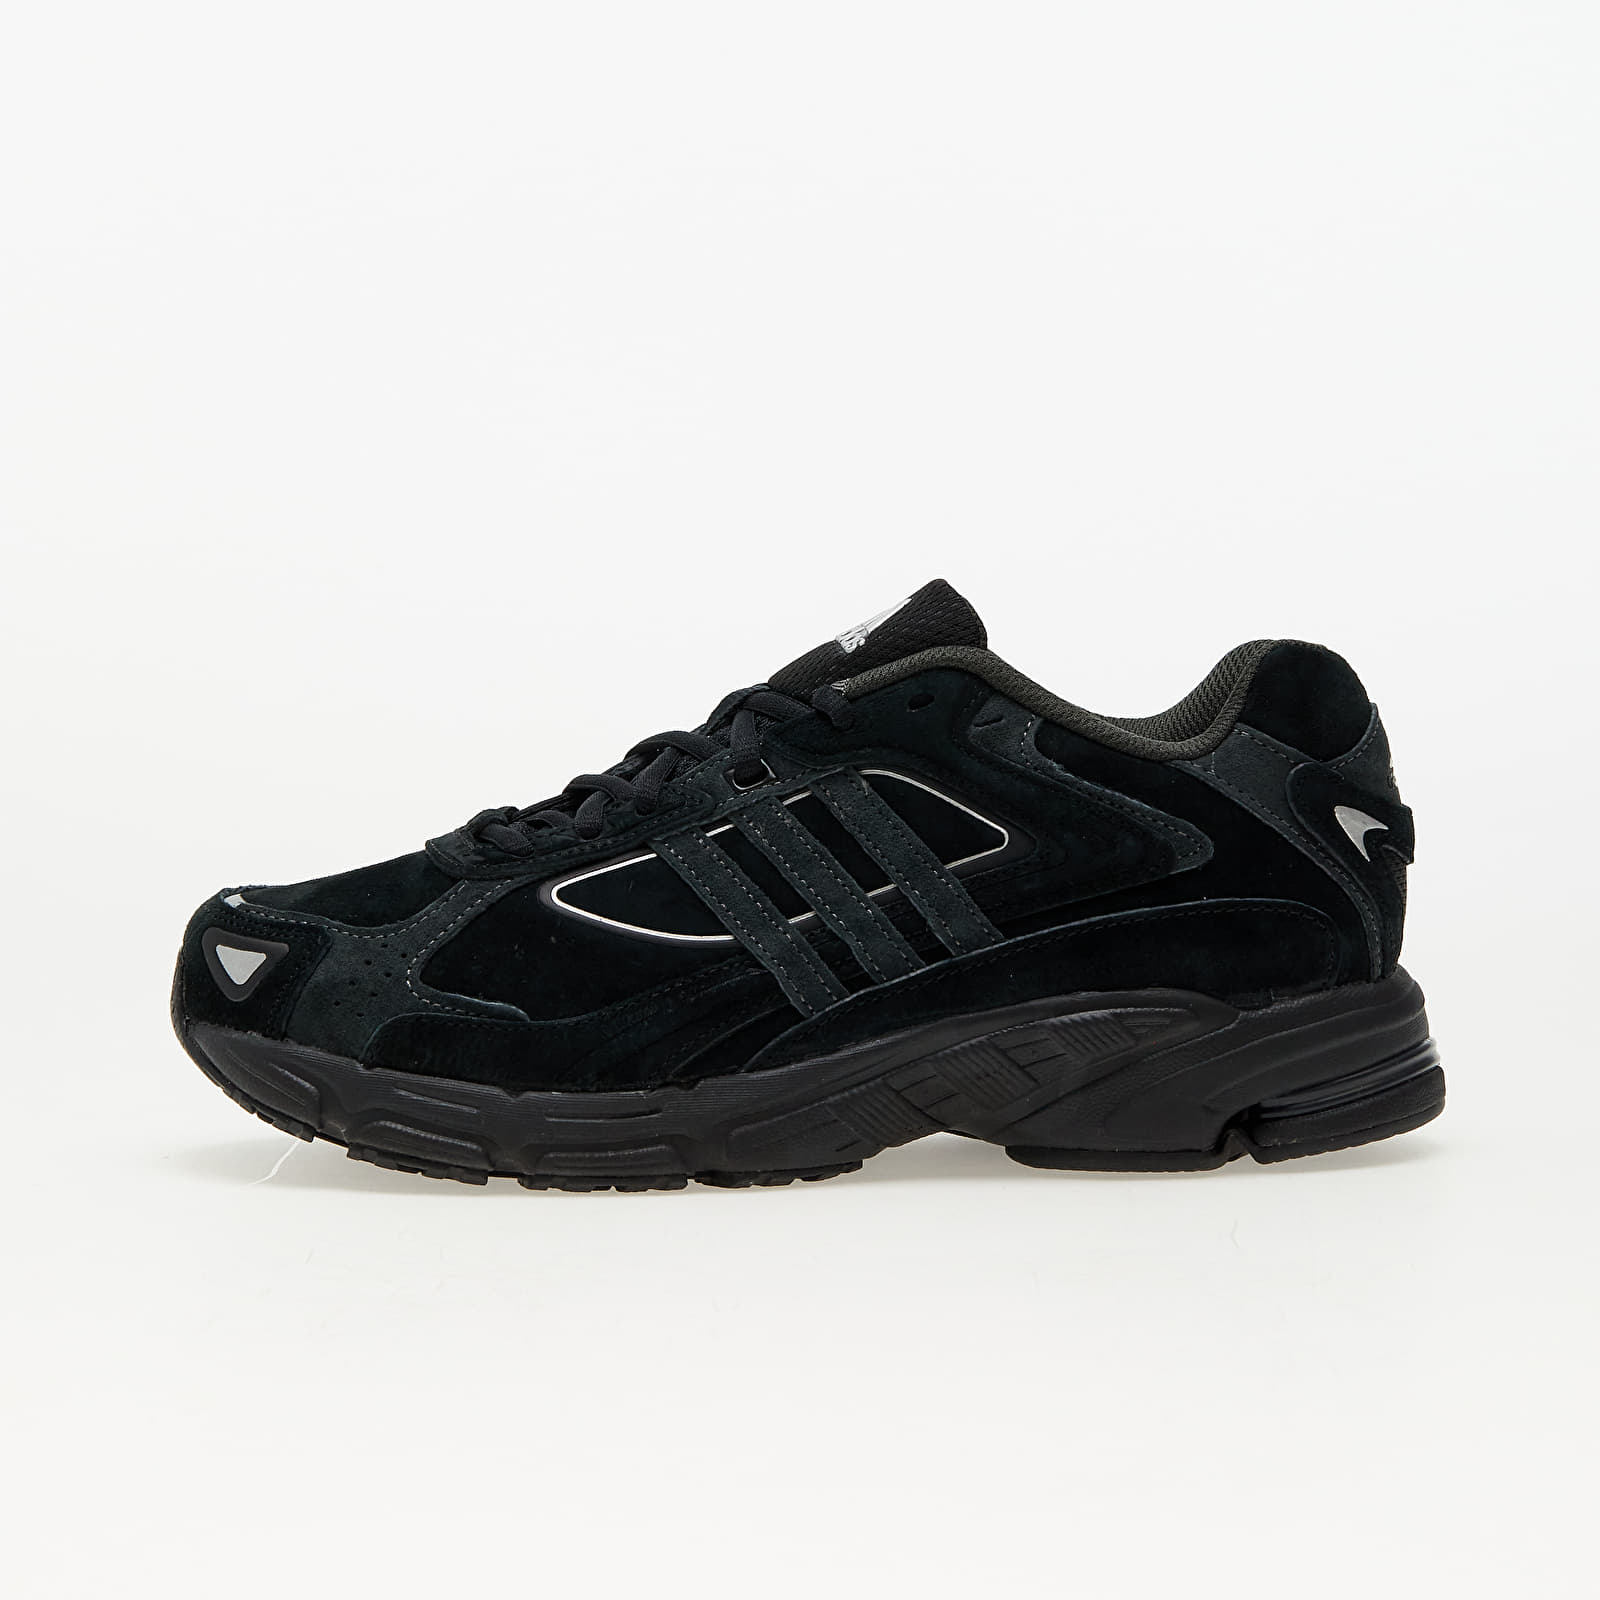 Men's shoes adidas Response Cl Core Black/ Carbon/ Core Black